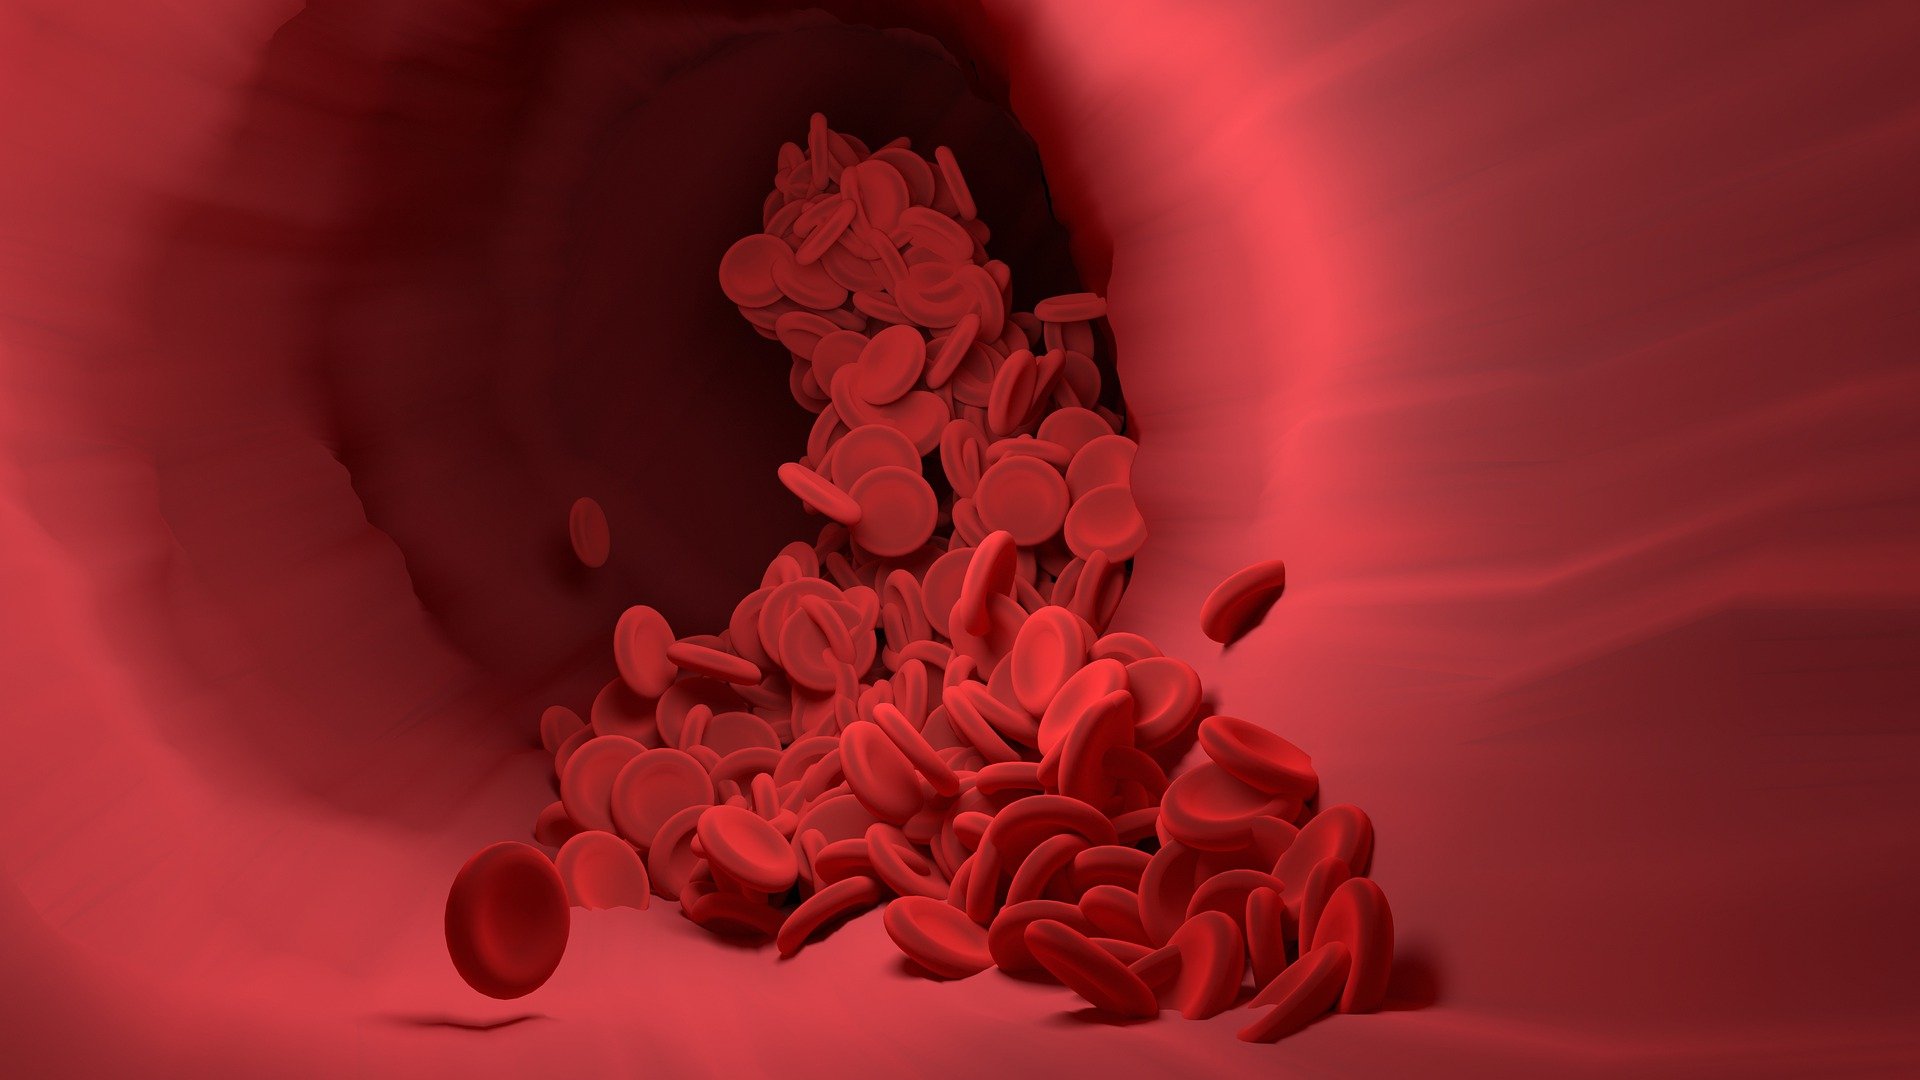 Pembekuan darah: Definisi, faktor, gejala, dan pengobatannya